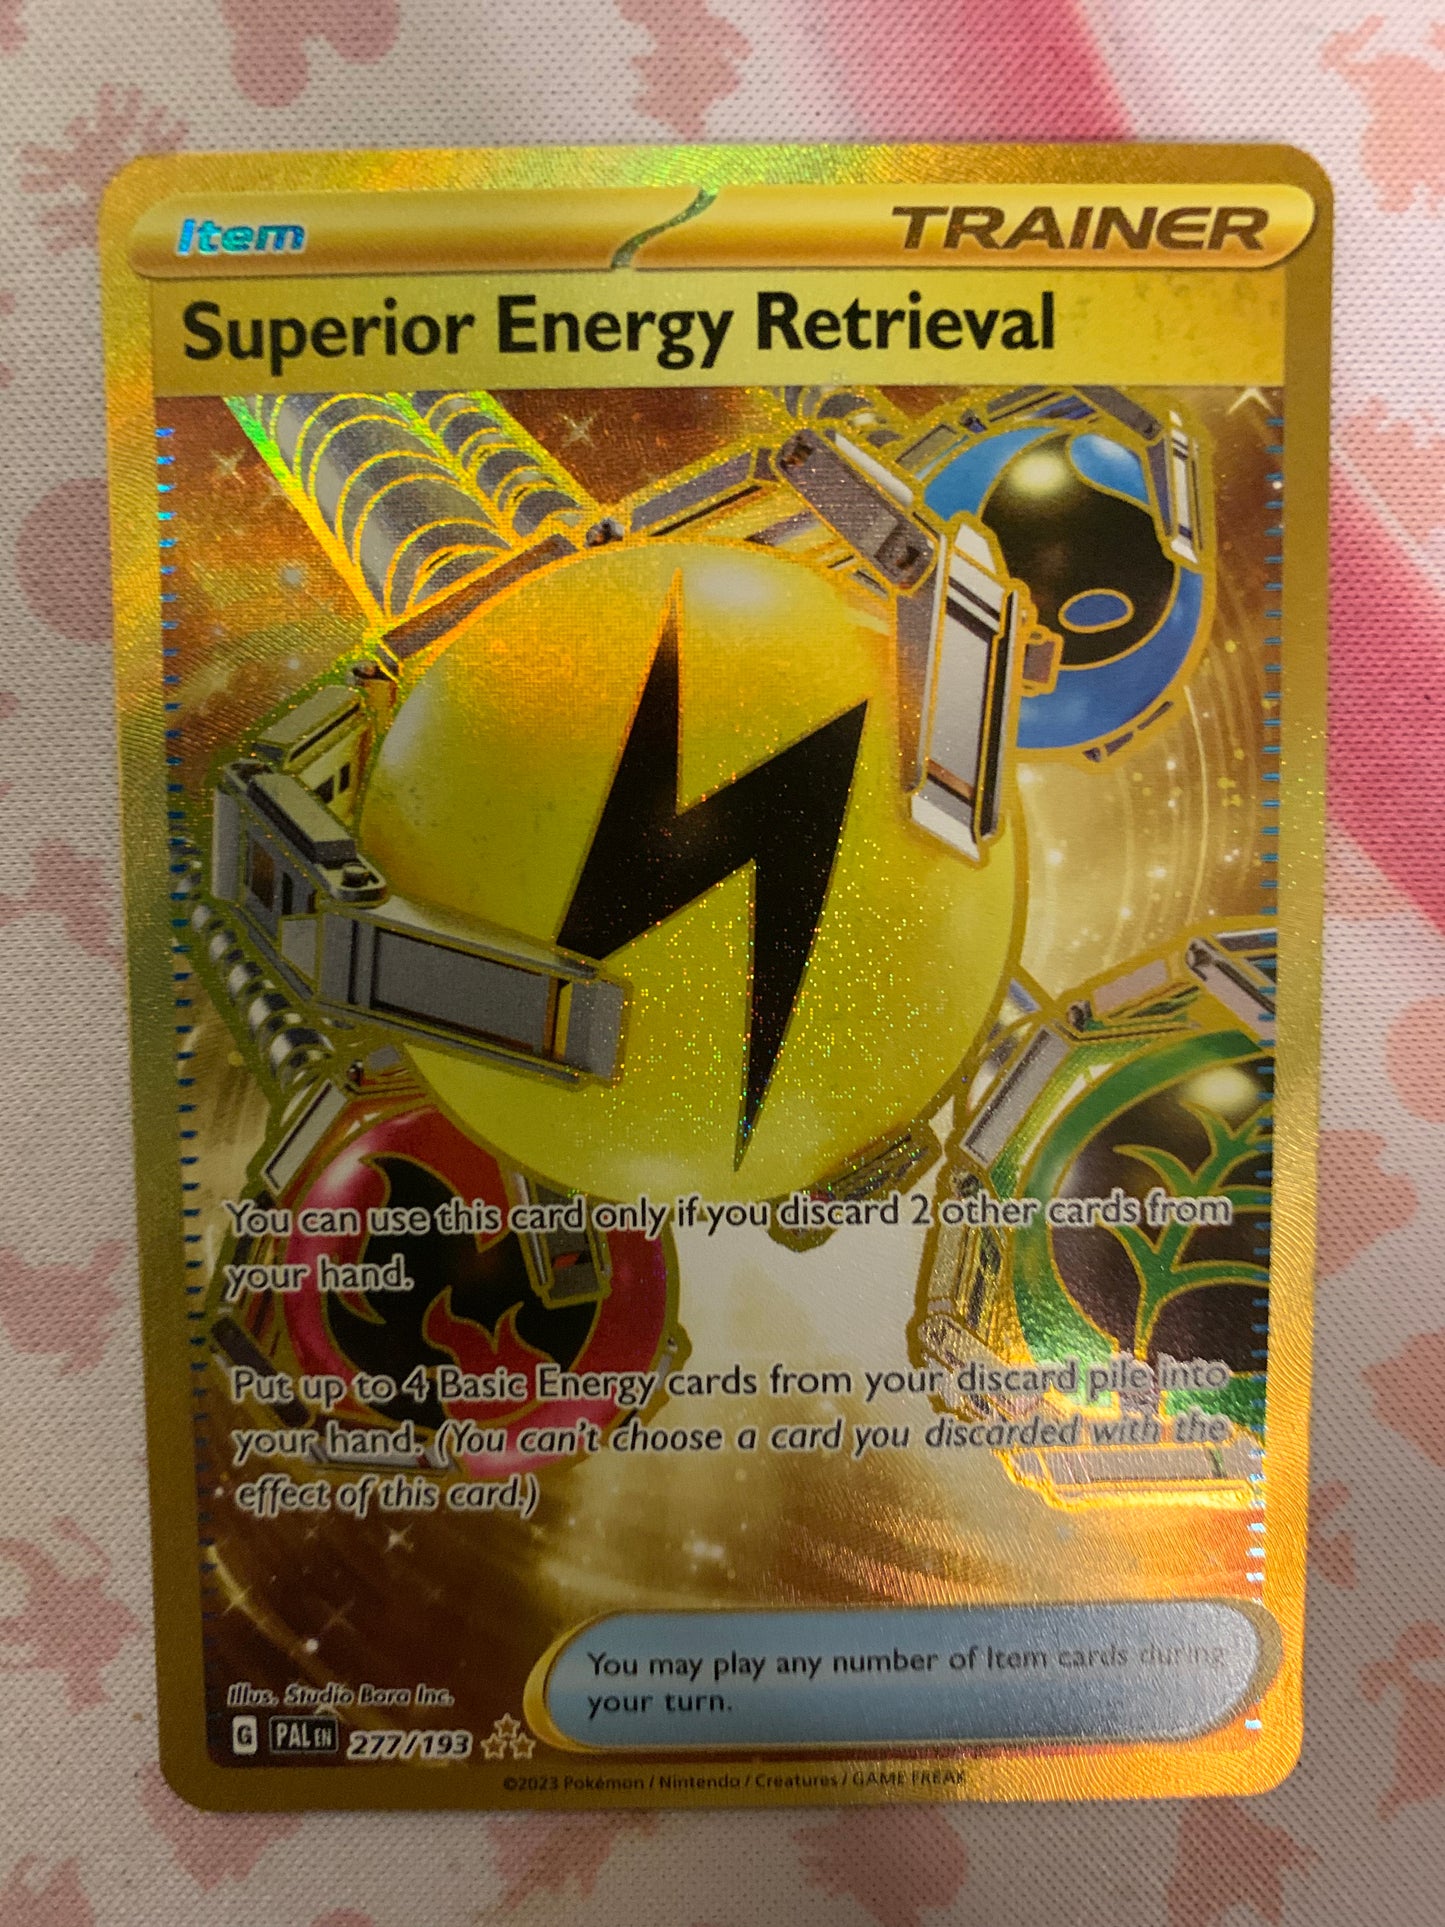 Superior Energy Retrieval